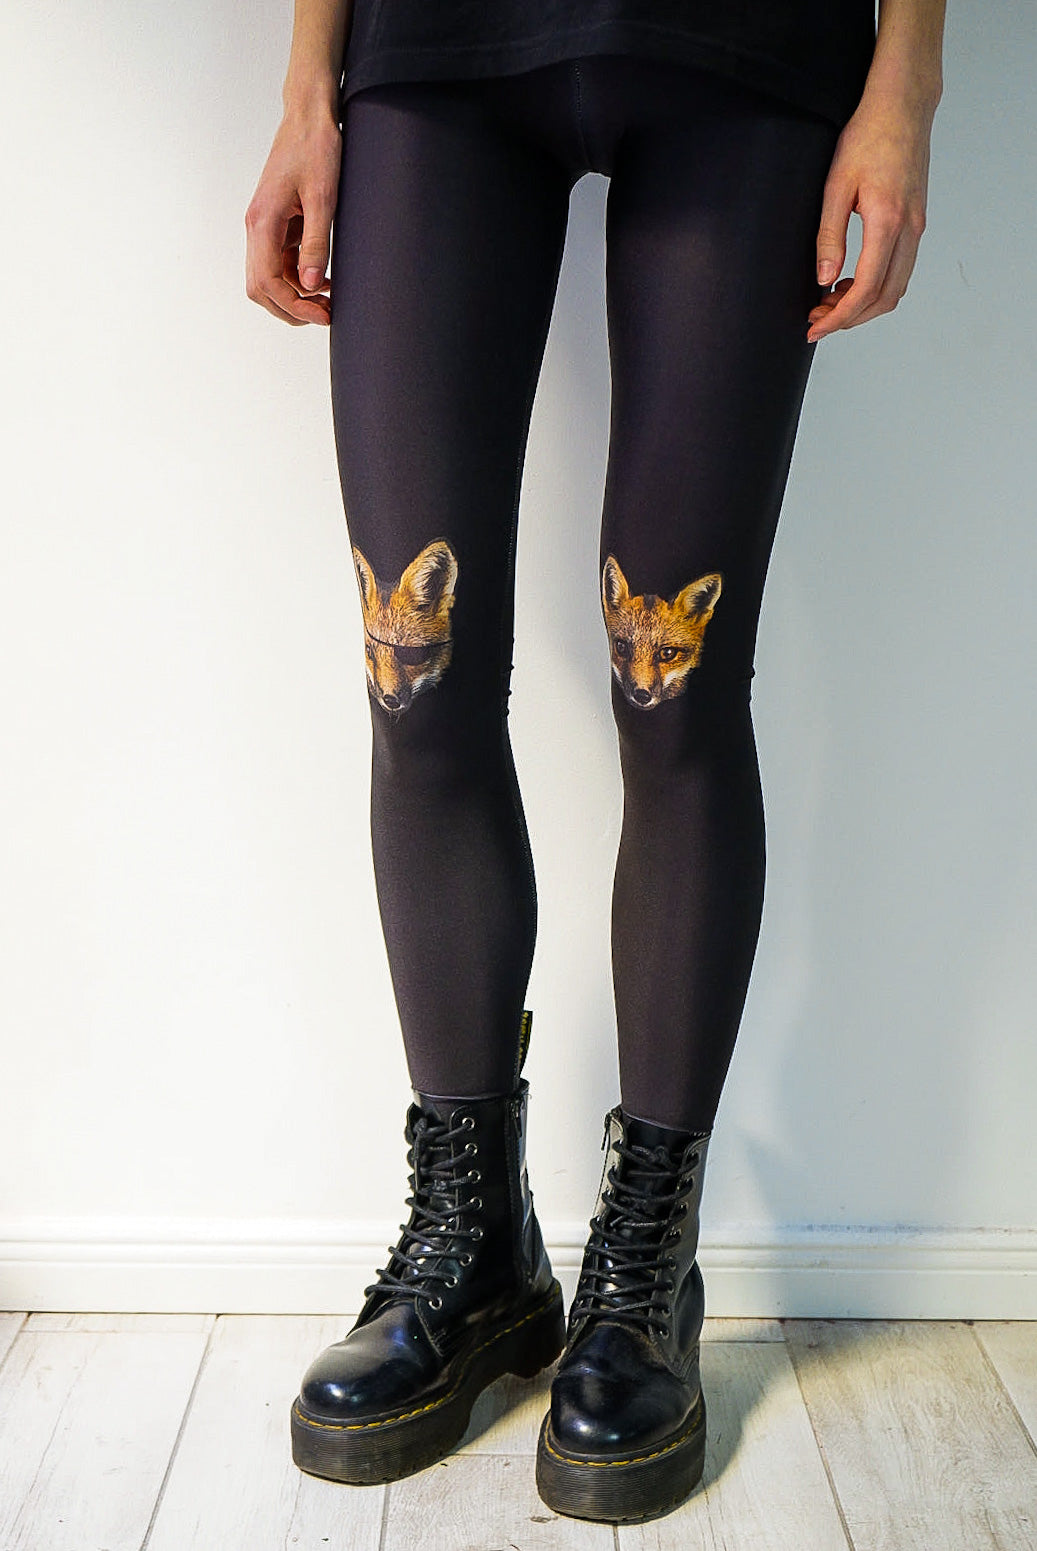 Buy Leggings With Foxes, Fox Printed Leggings